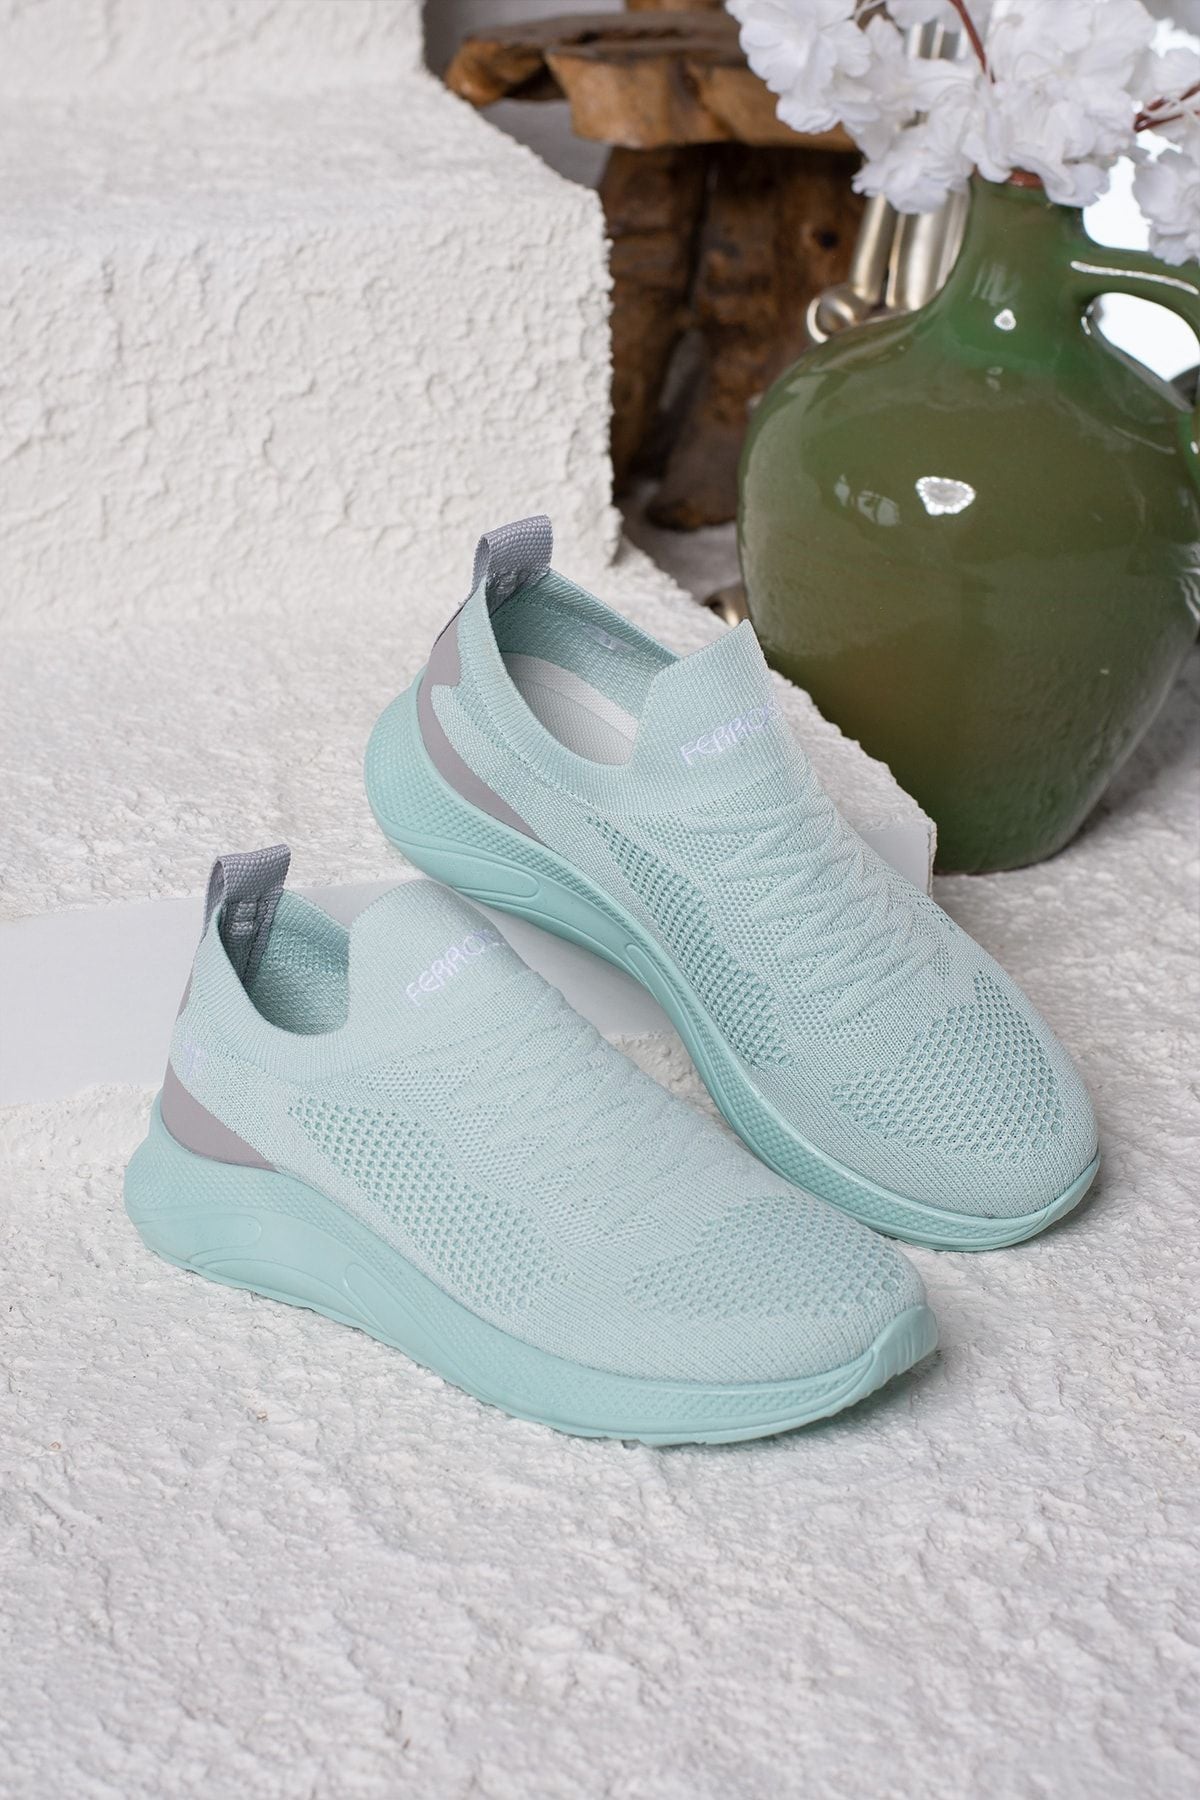 Daily Unisex Mint Sneaker Slip-On Breathing Light Walking Lace Flexible Sports Shoes 041F